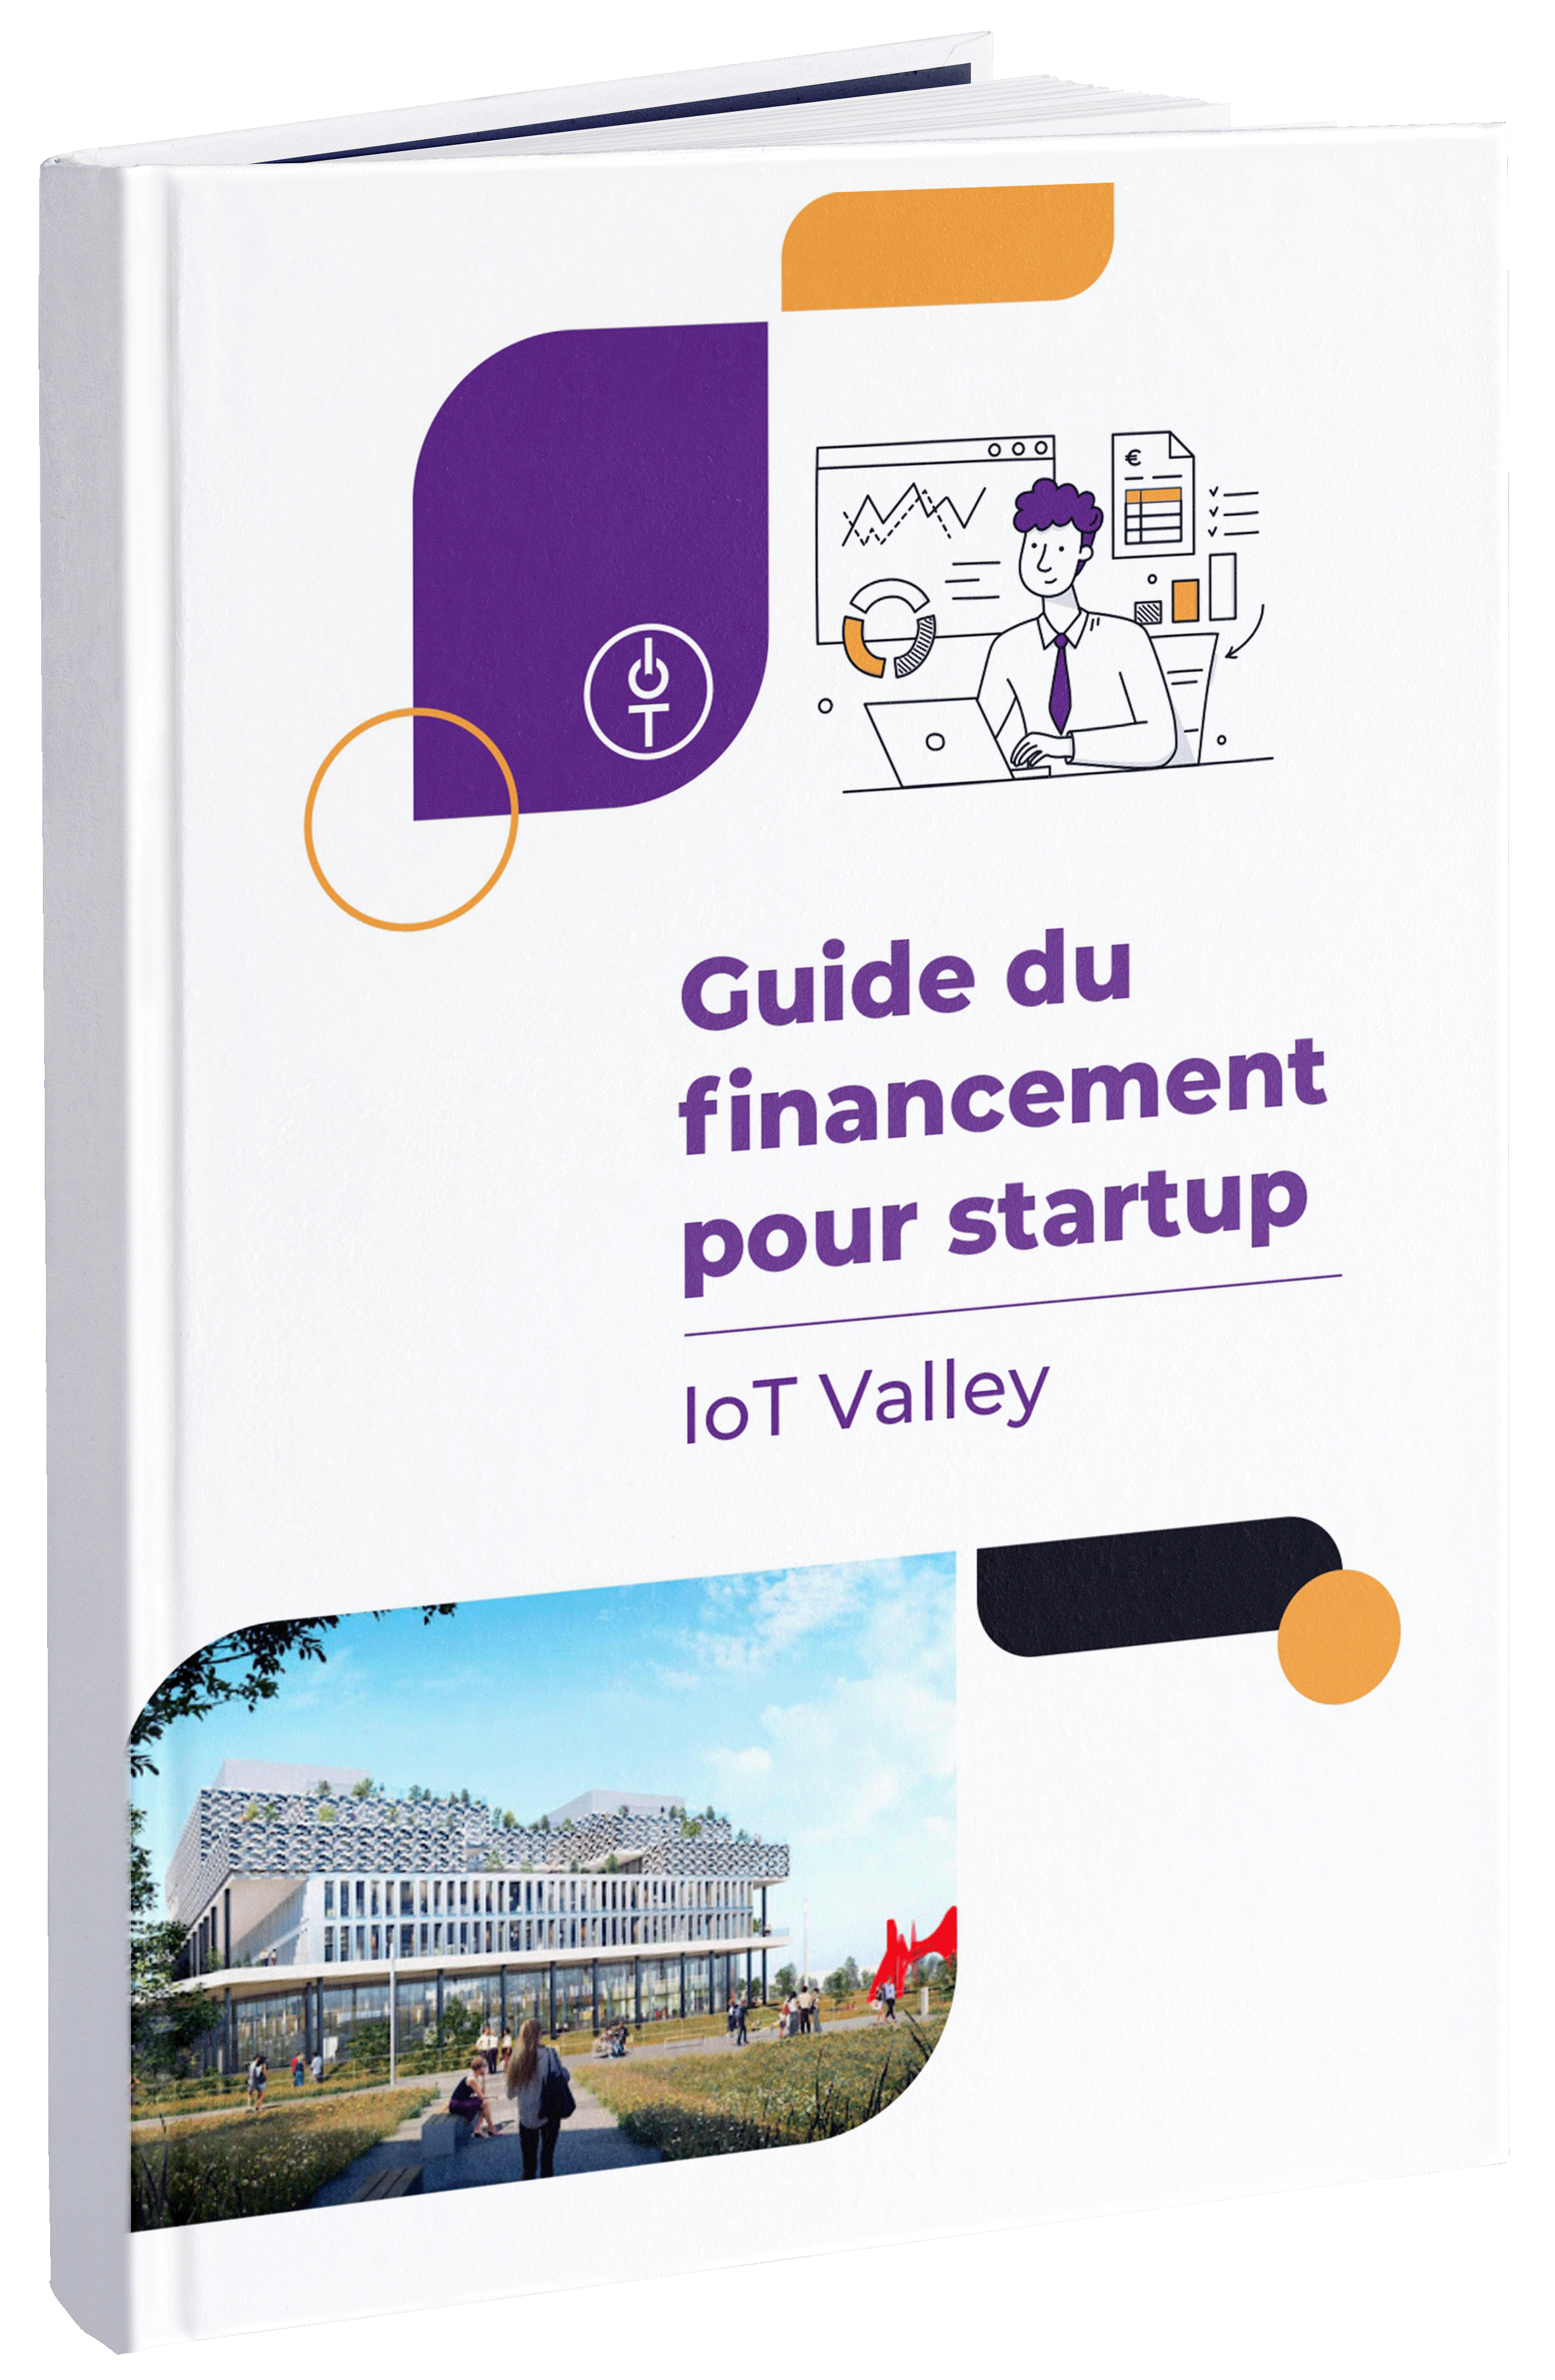 Guide du financement pour startup